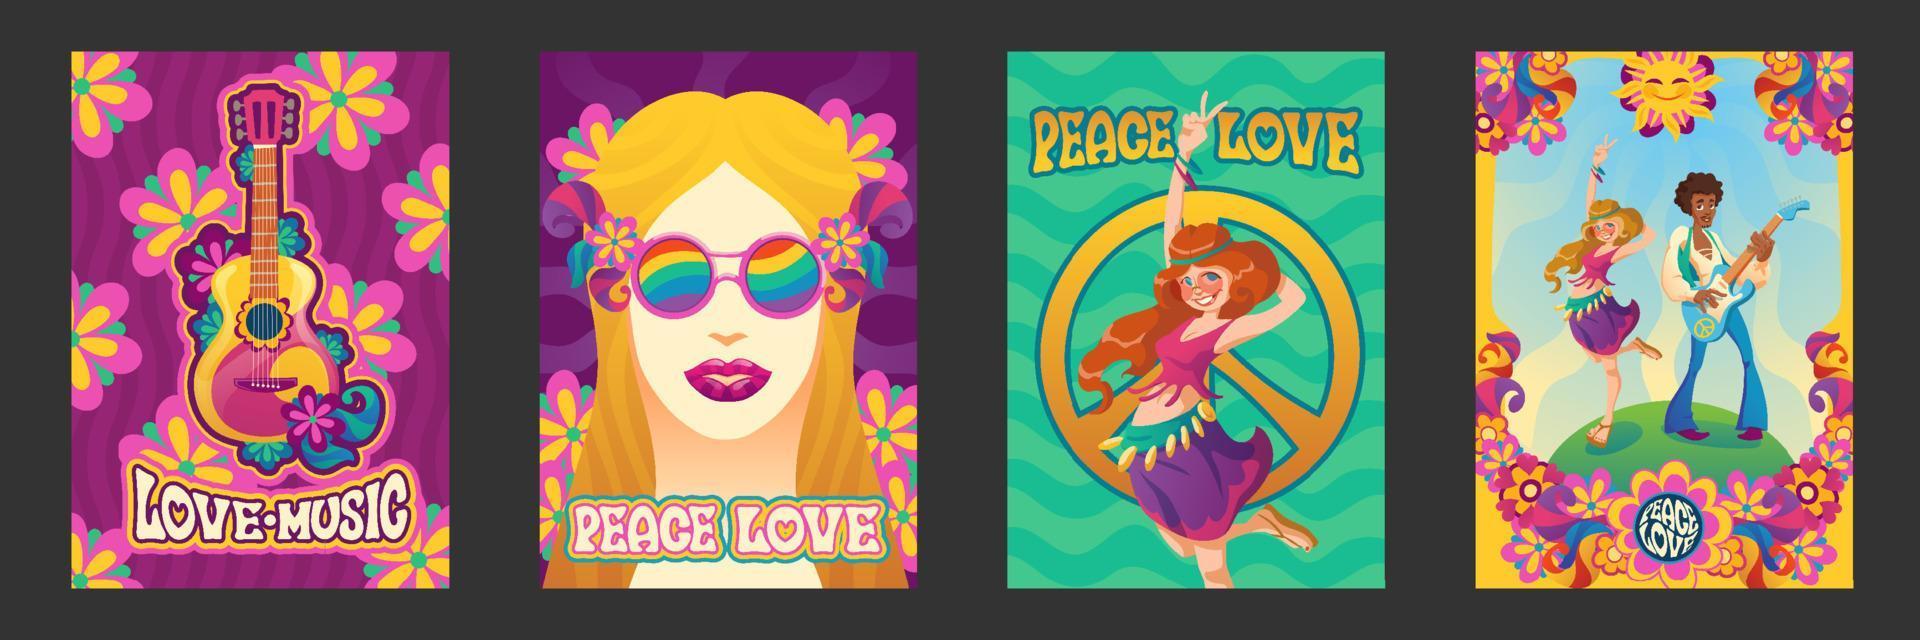 Hippie Frieden und Liebe Poster glücklich lächelnde Menschen vektor